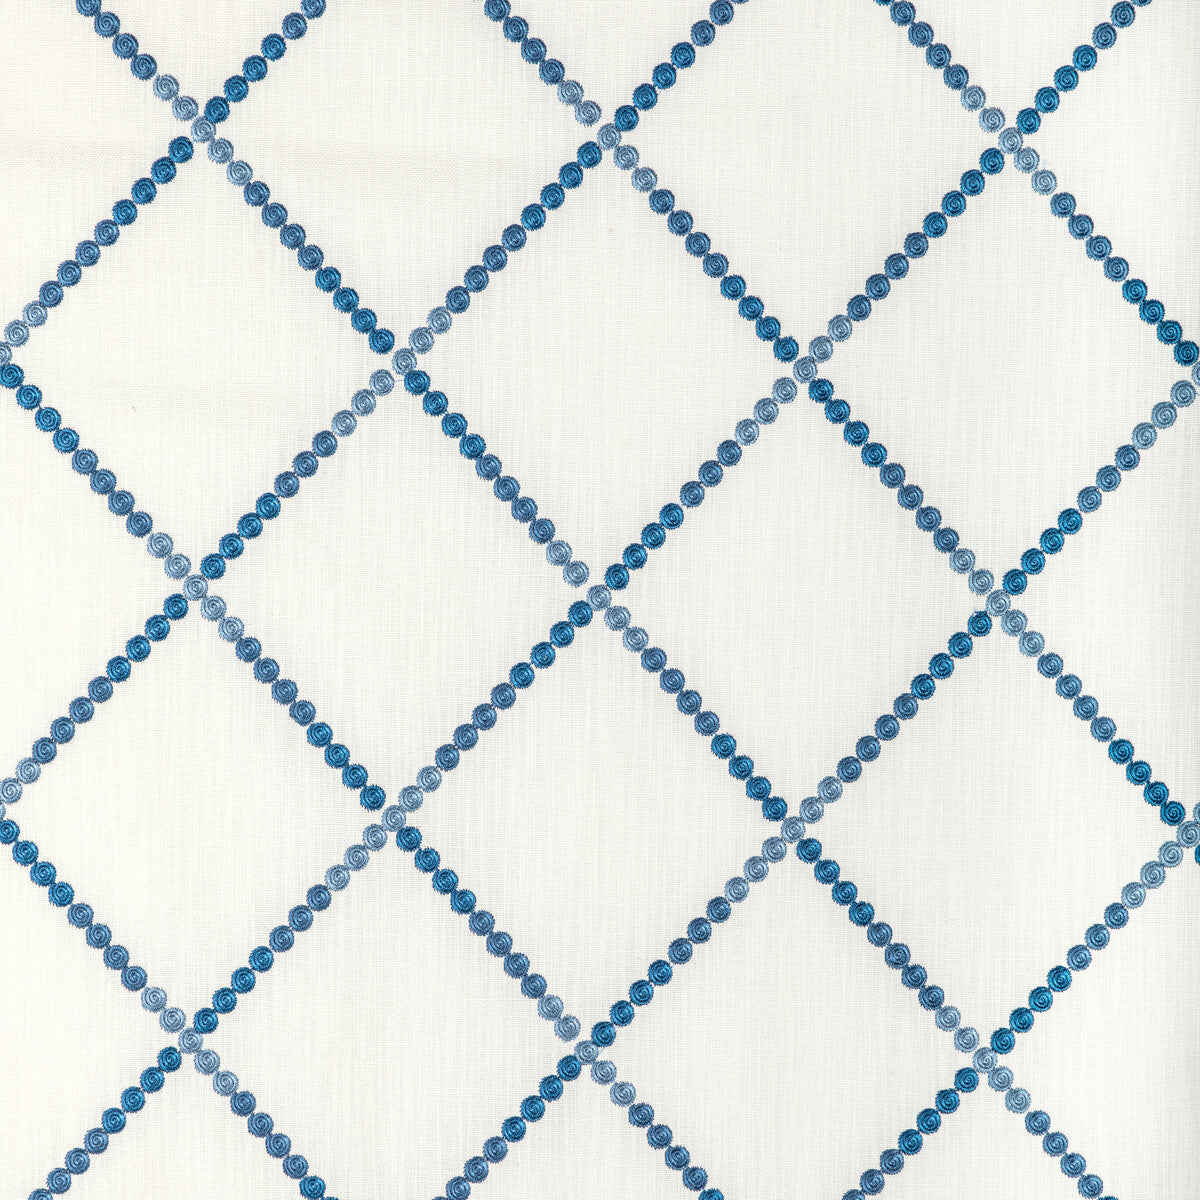 Kravet Basics fabric in 36559-5 color - pattern 36559.5.0 - by Kravet Basics